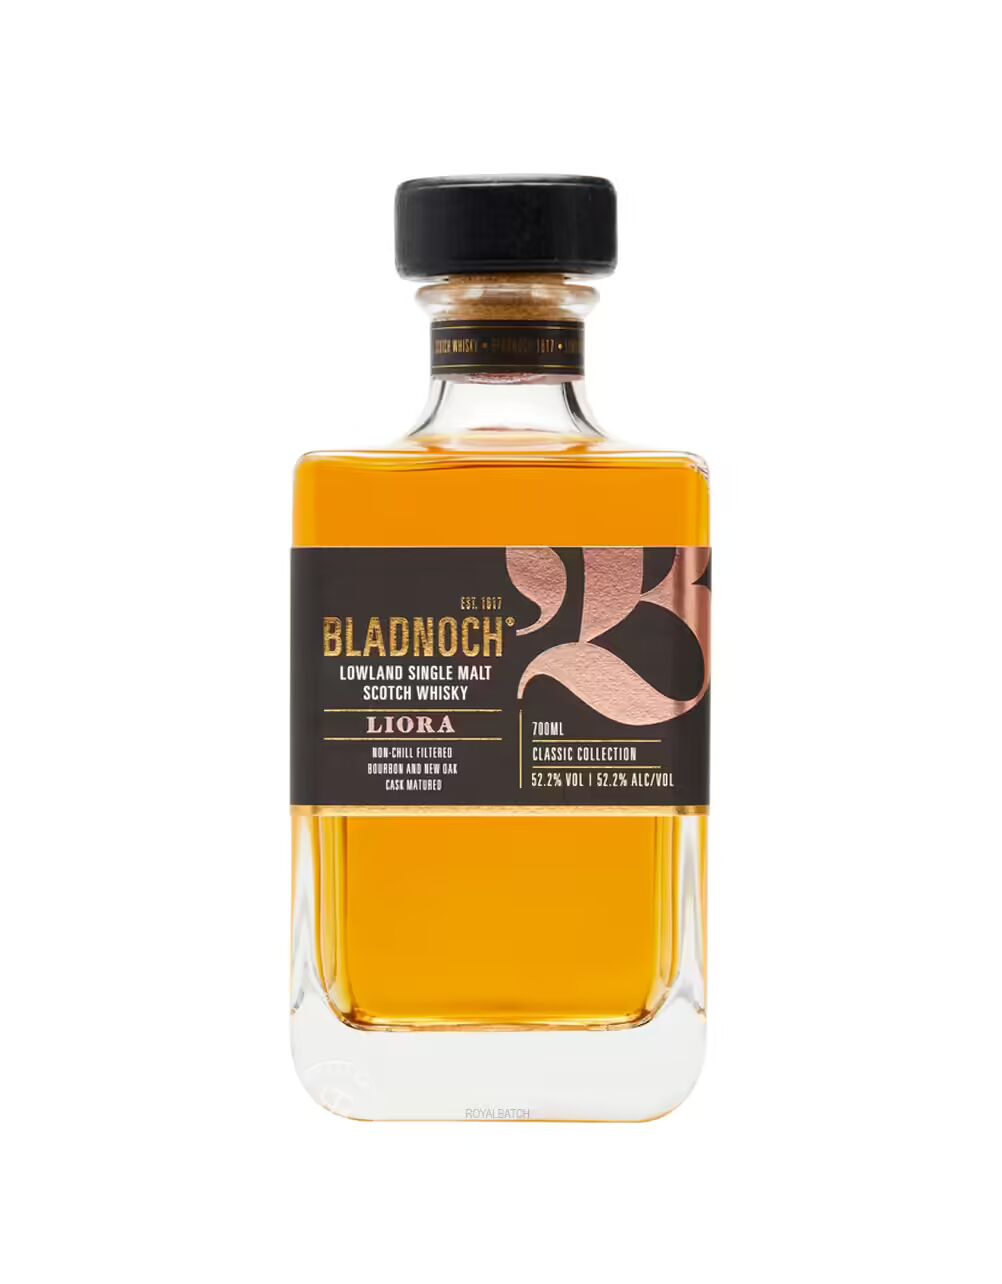 Bladnoch Liora Single Malt Scotch Whisky